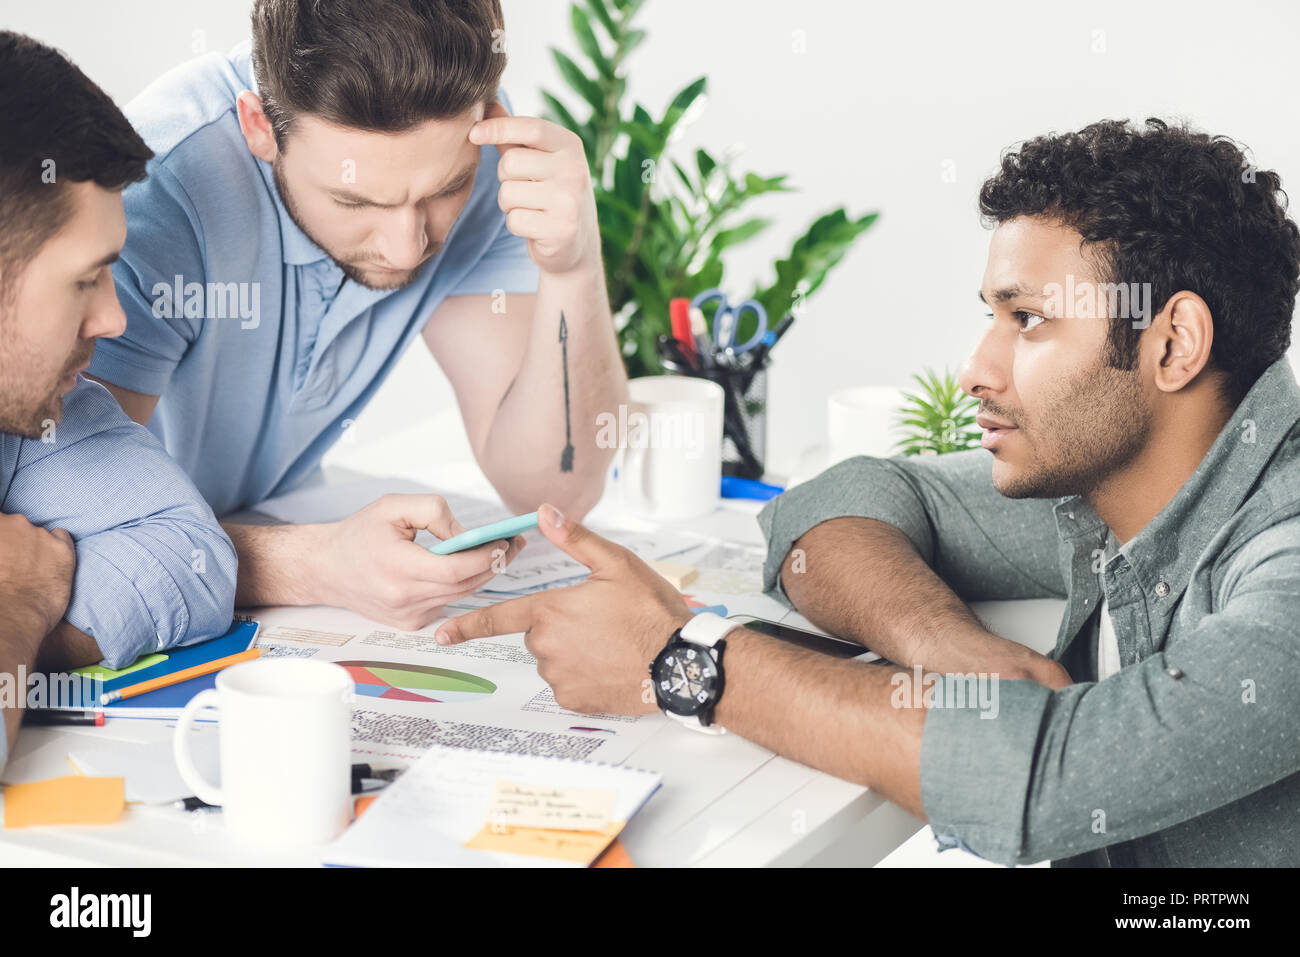 Trois jeunes hommes assis à table et de travailler sur de nouveaux projet, d'équipe business concept Banque D'Images